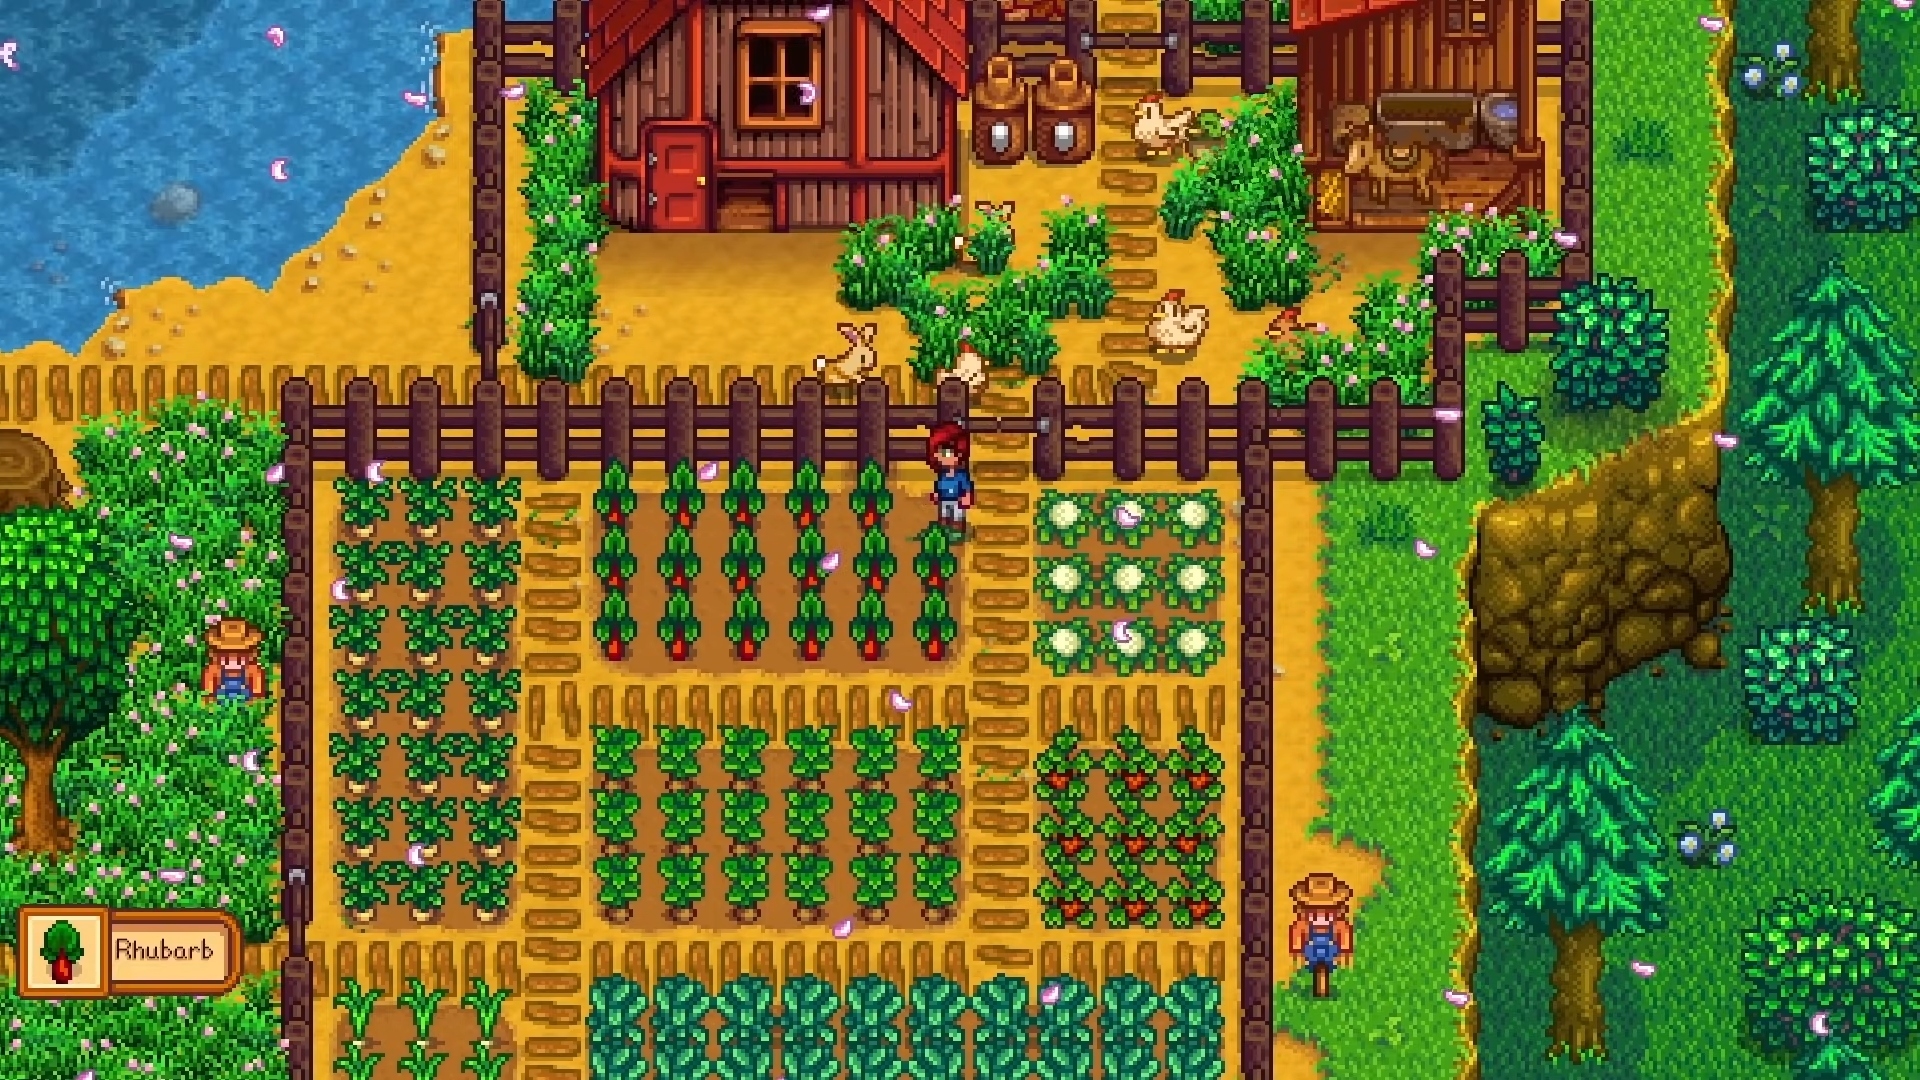 Najlepsze gry rolnicze - Stardew Valley.  Zrzut ekranu pokazuje postać gracza stojącą pośród wielu rodzajów upraw, z ich domem niedaleko.